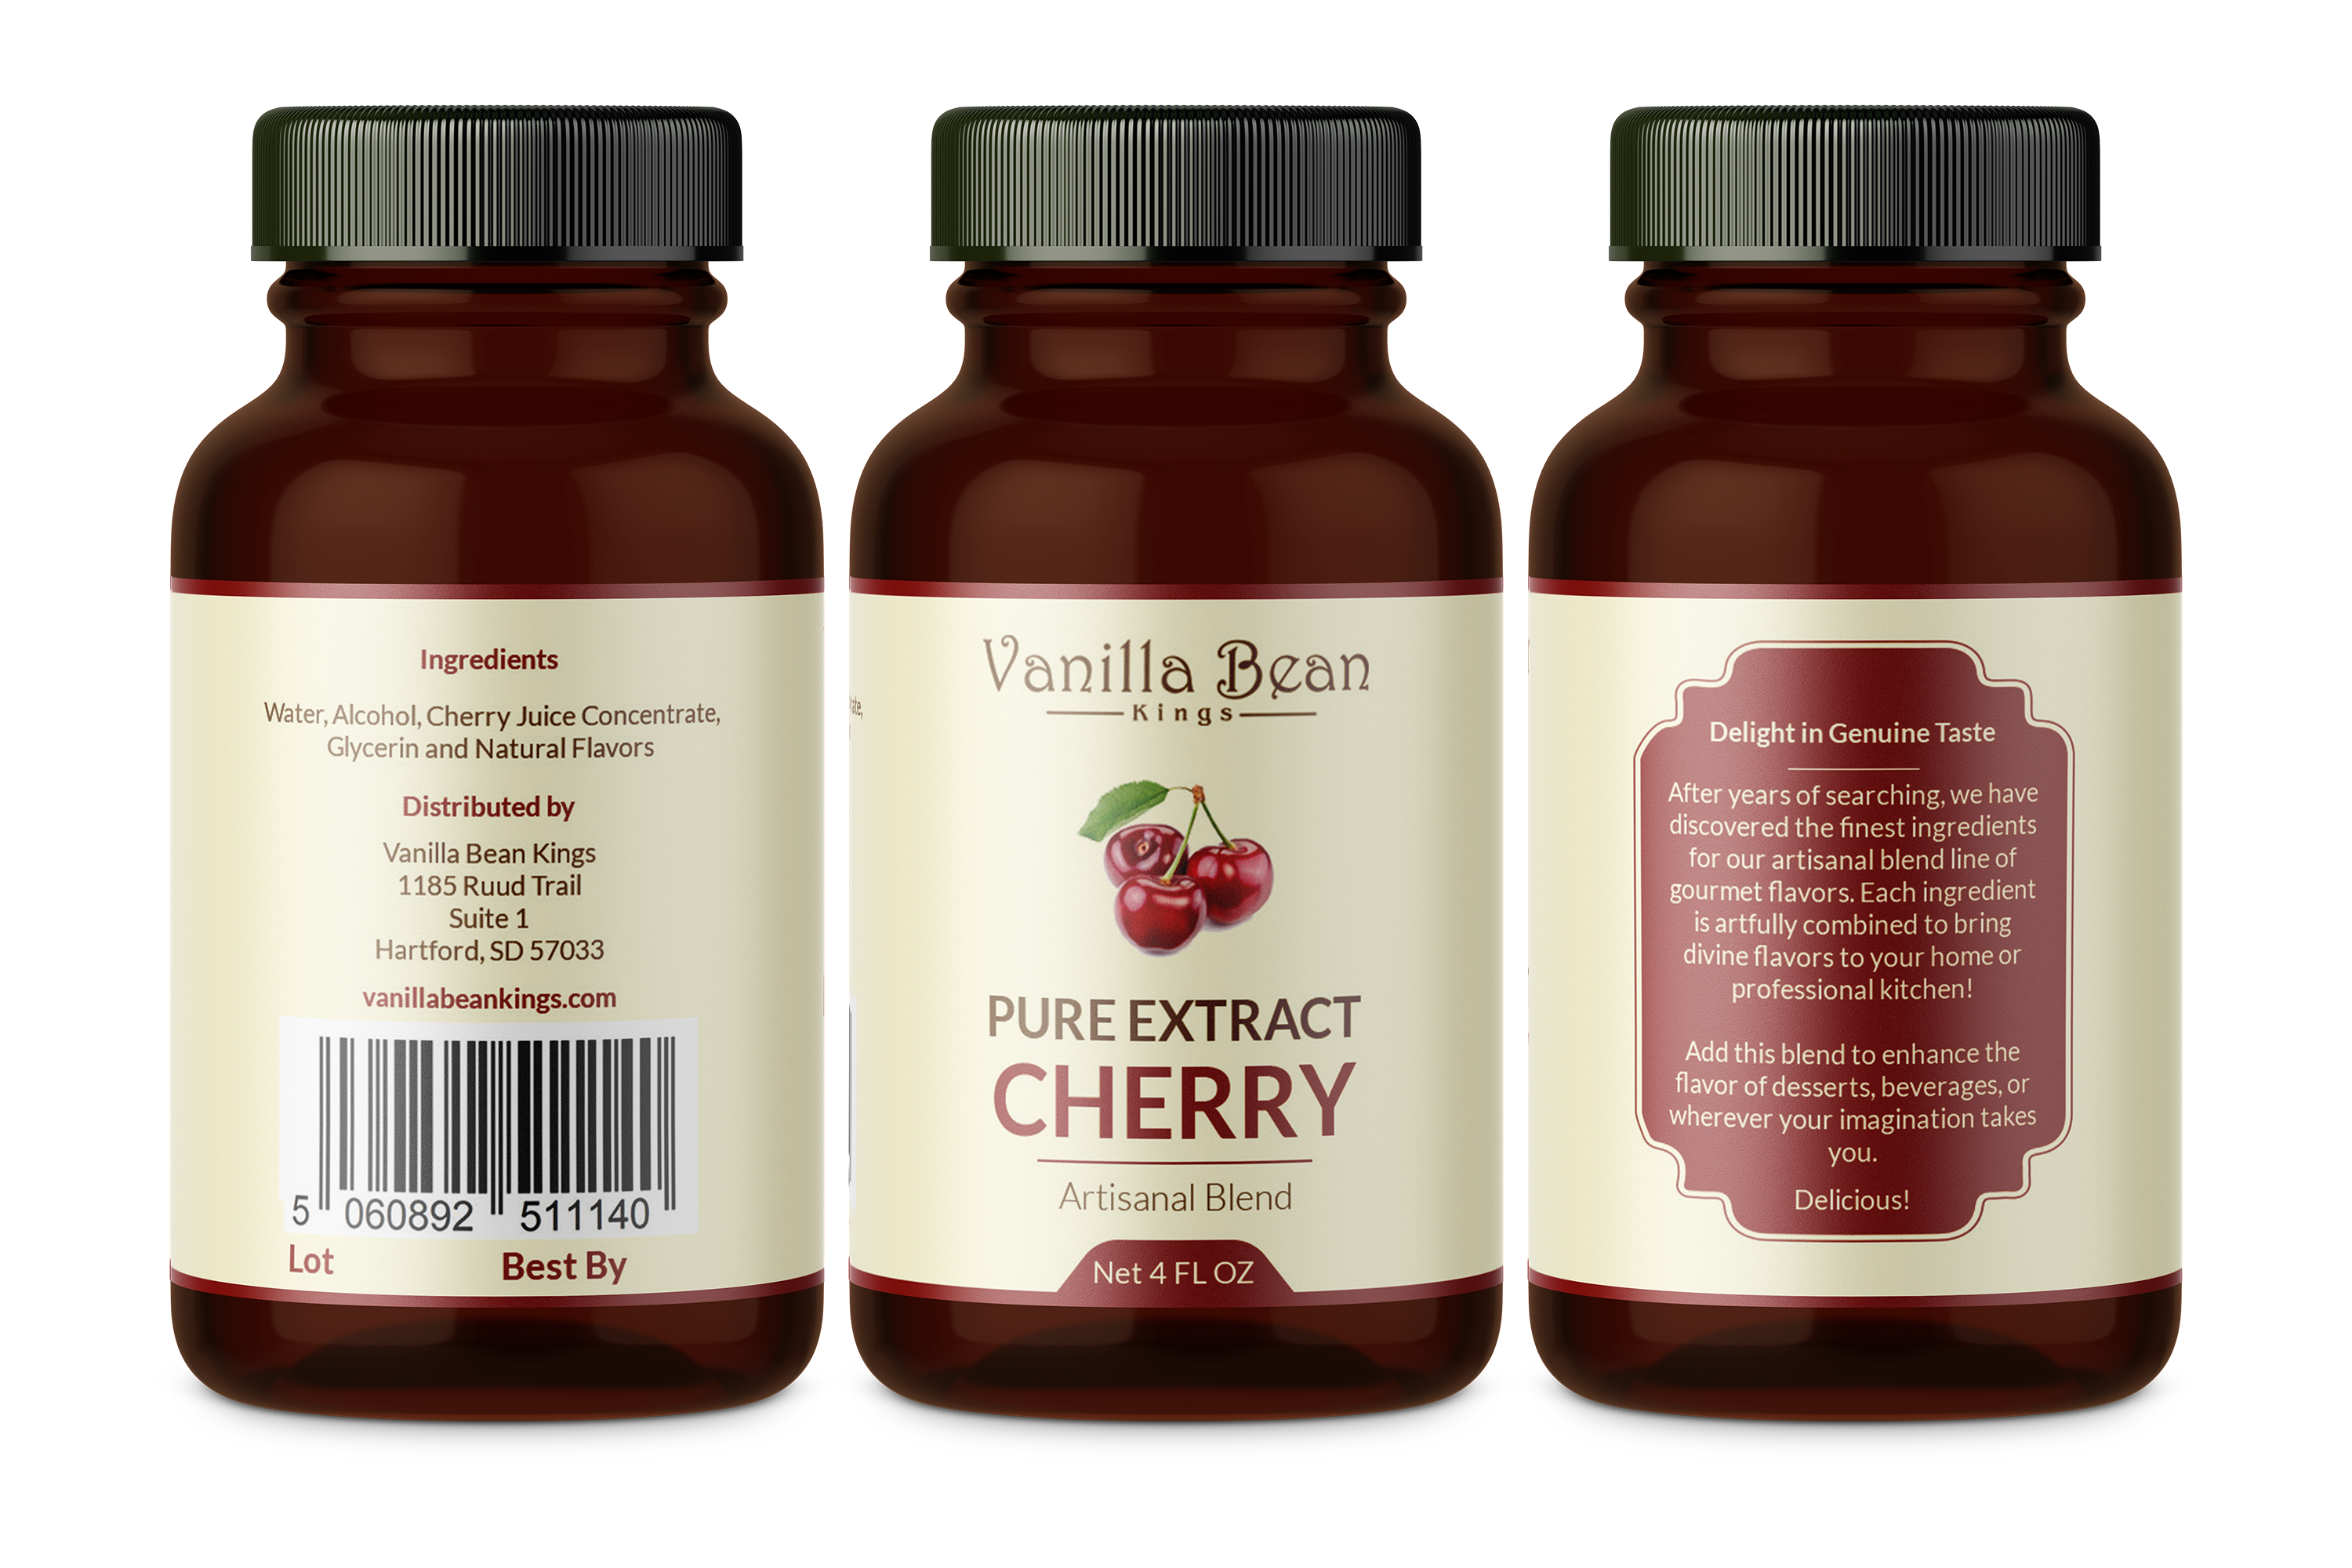 cherry extract 4 oz bottle label